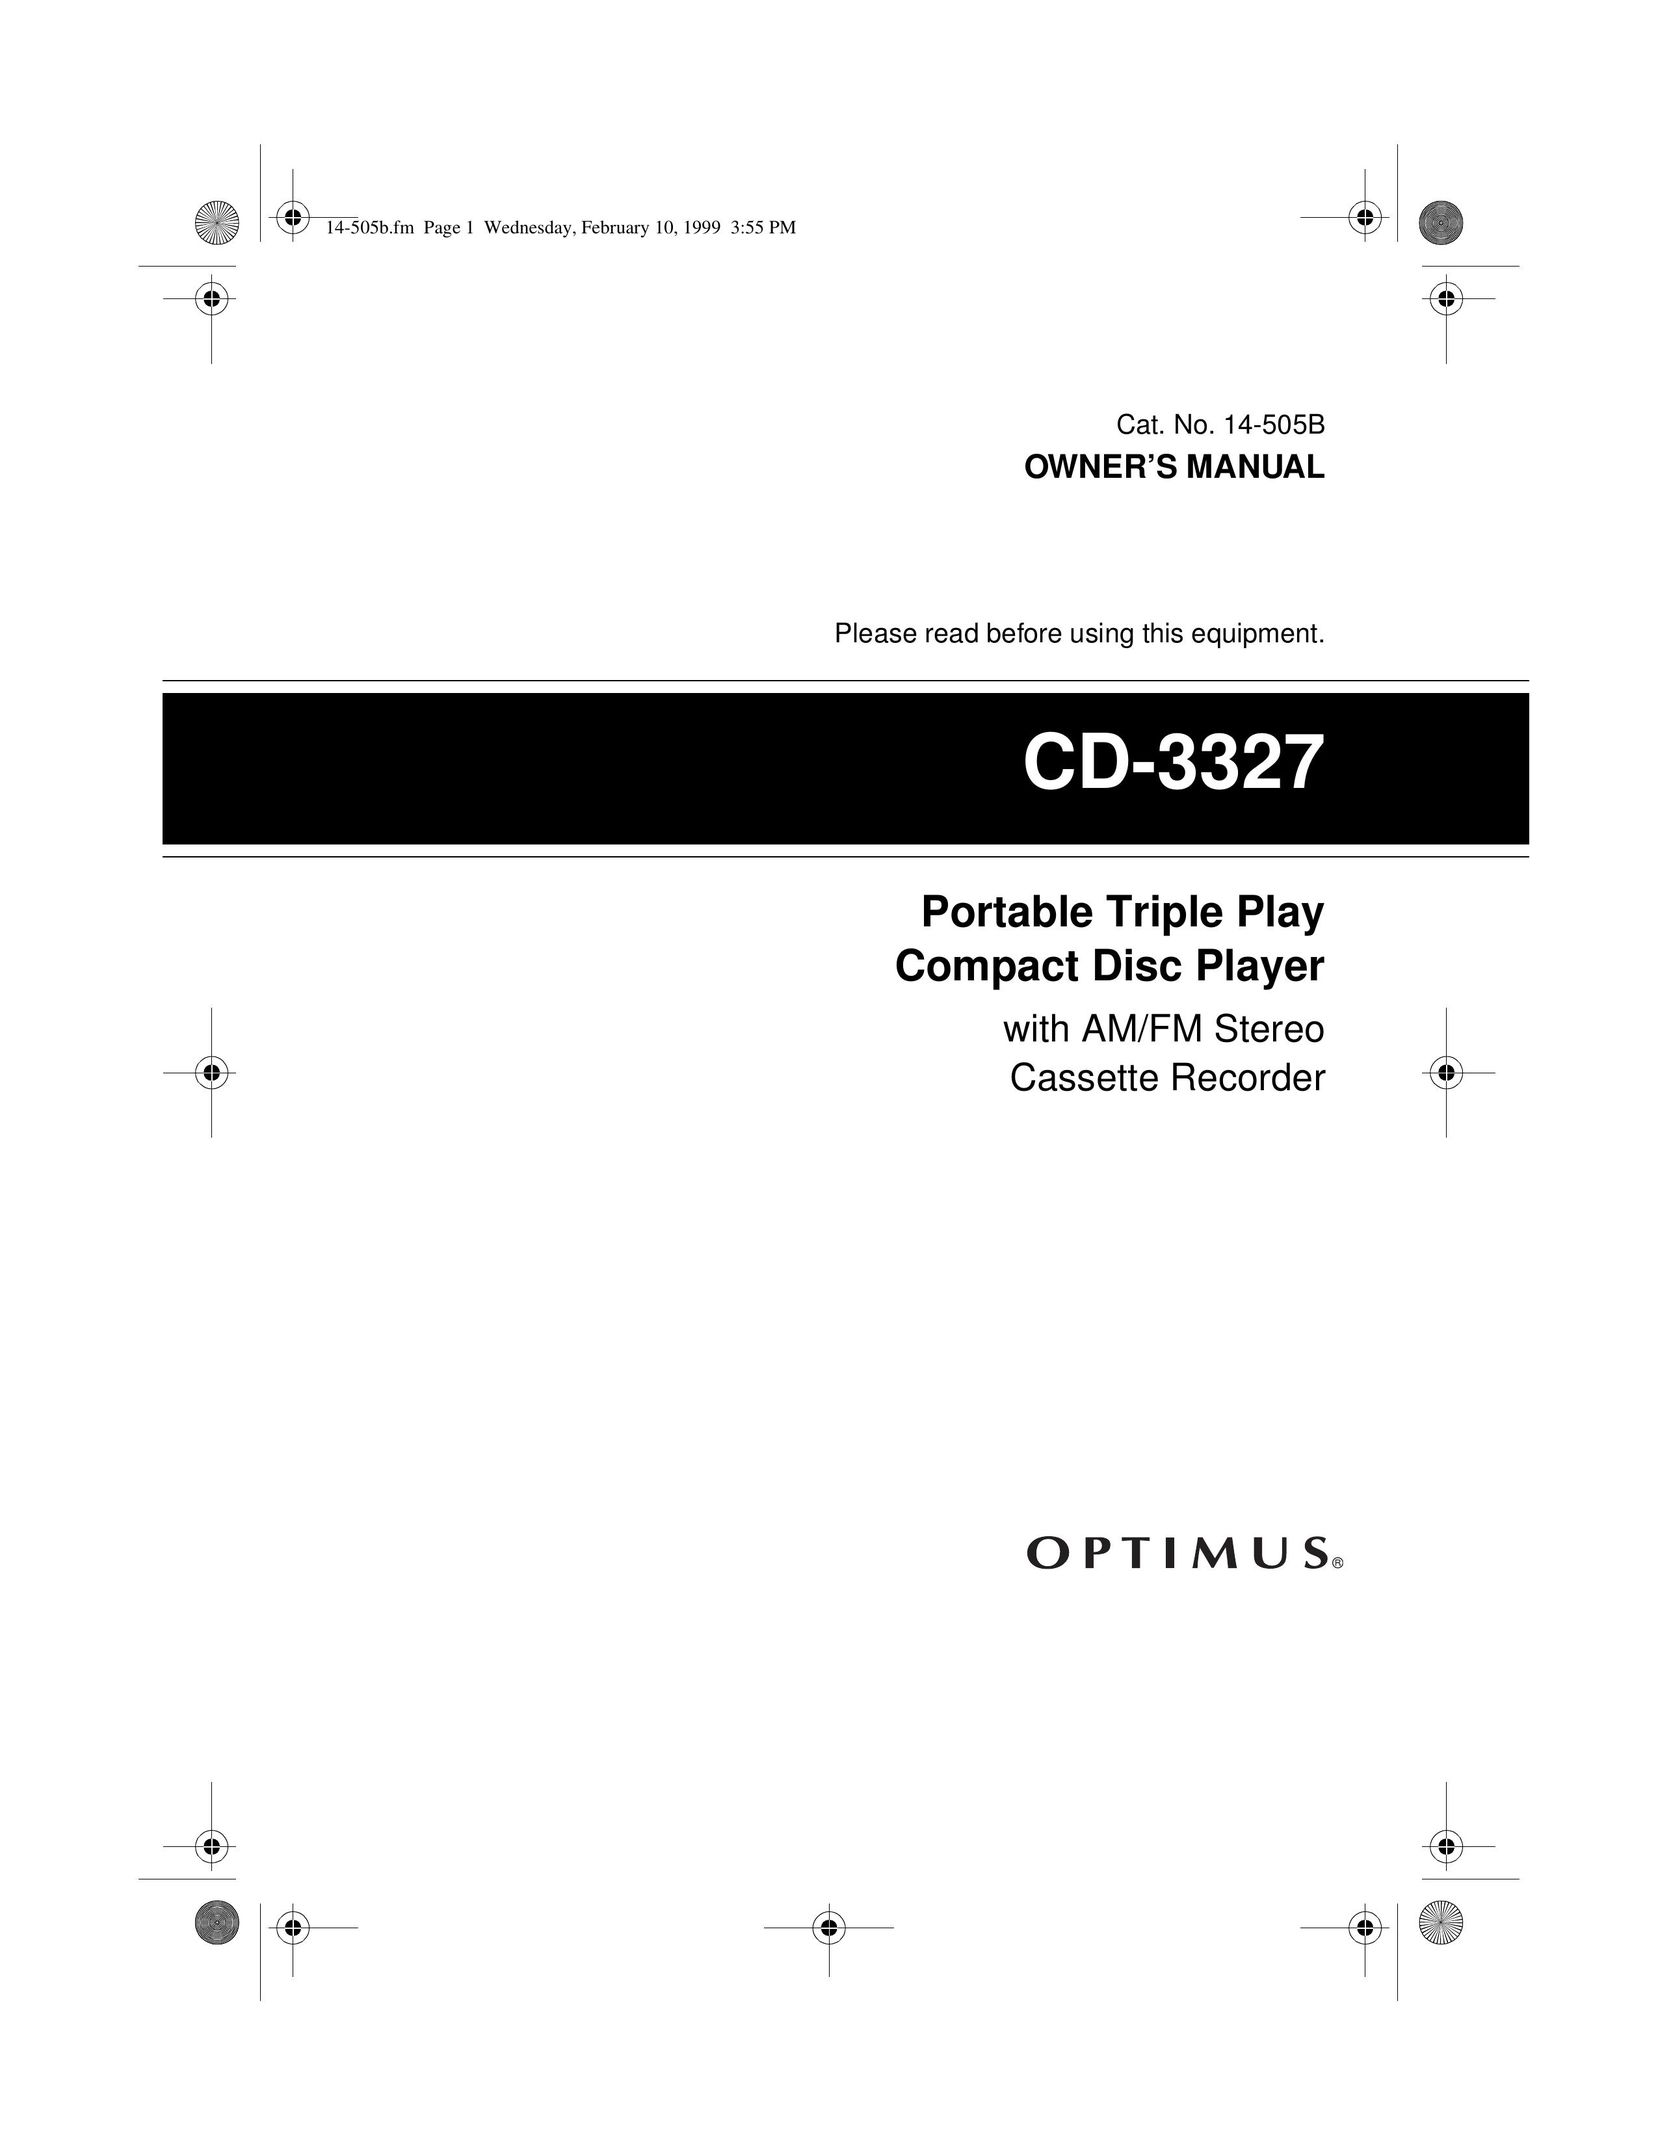 Optimus CD-3327 Portable CD Player User Manual